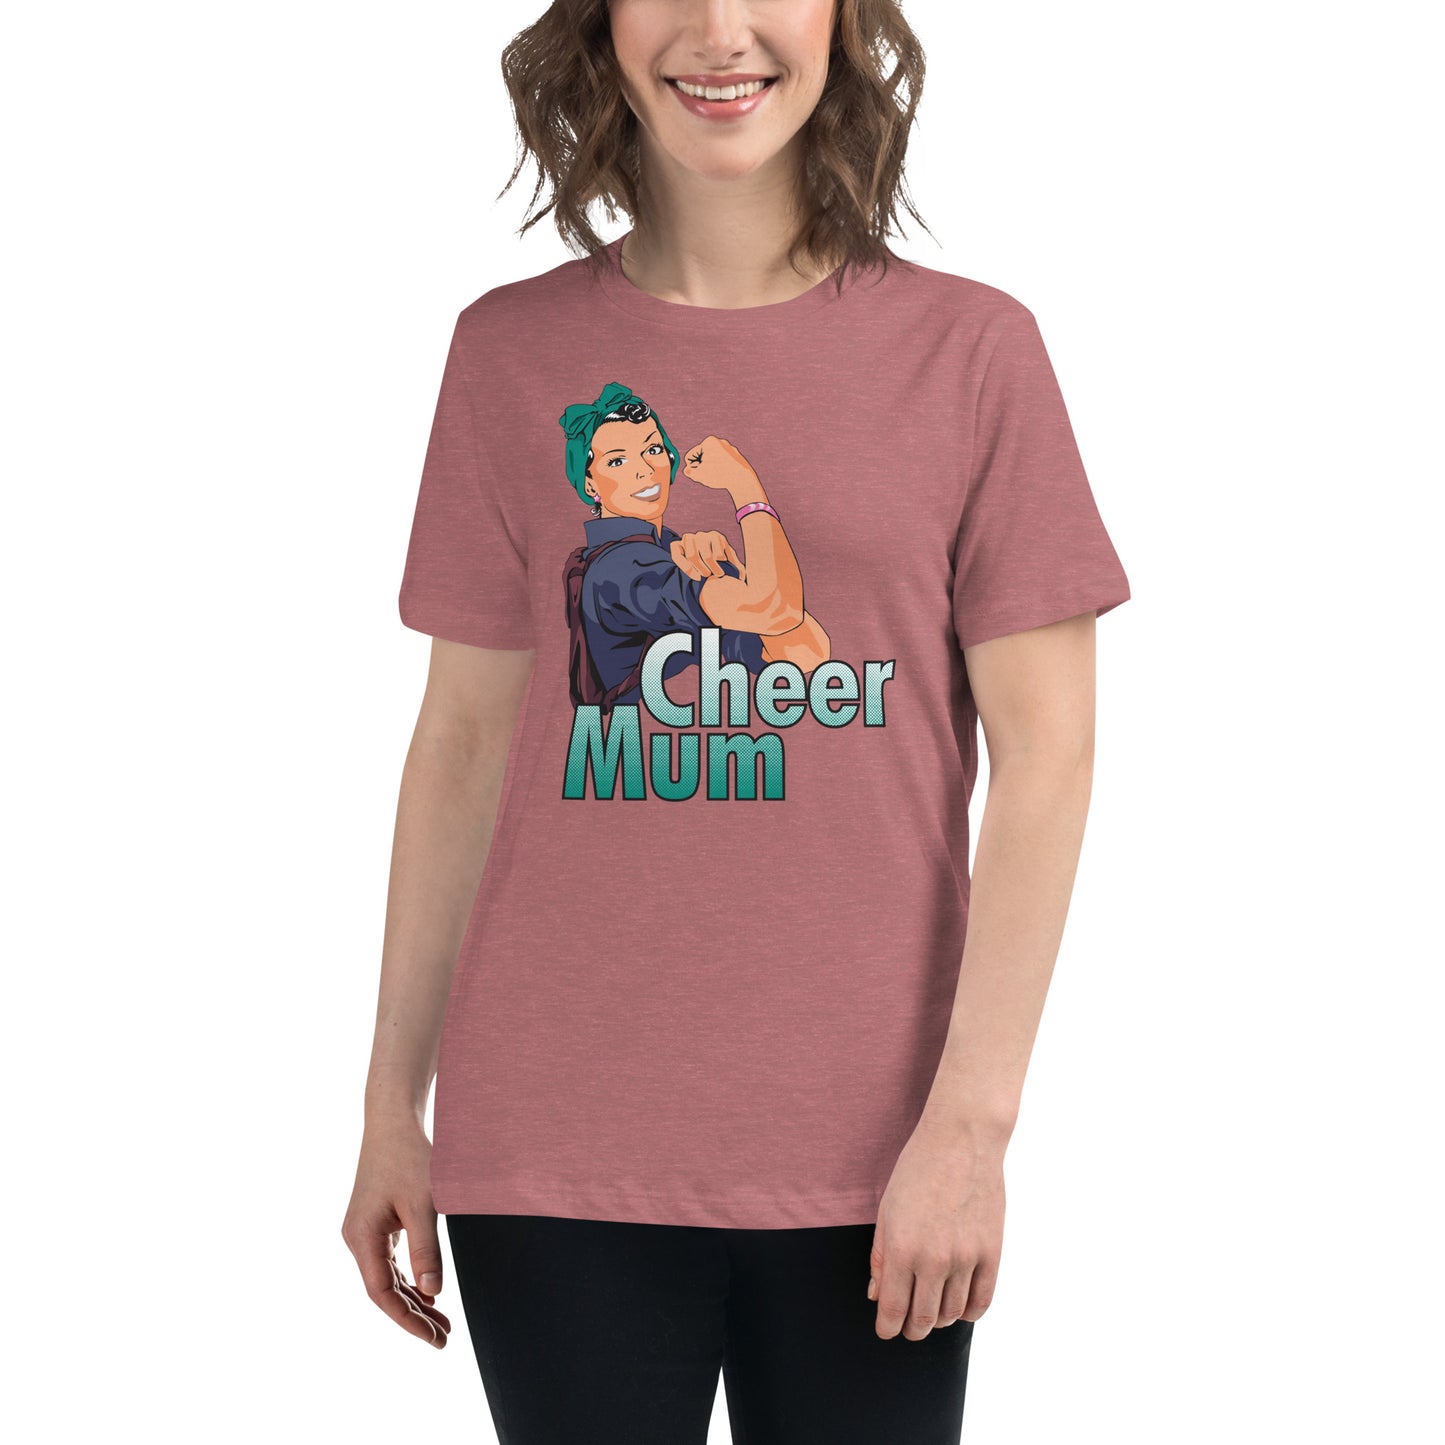 Cheer Mum T-Shirt (Style 5)